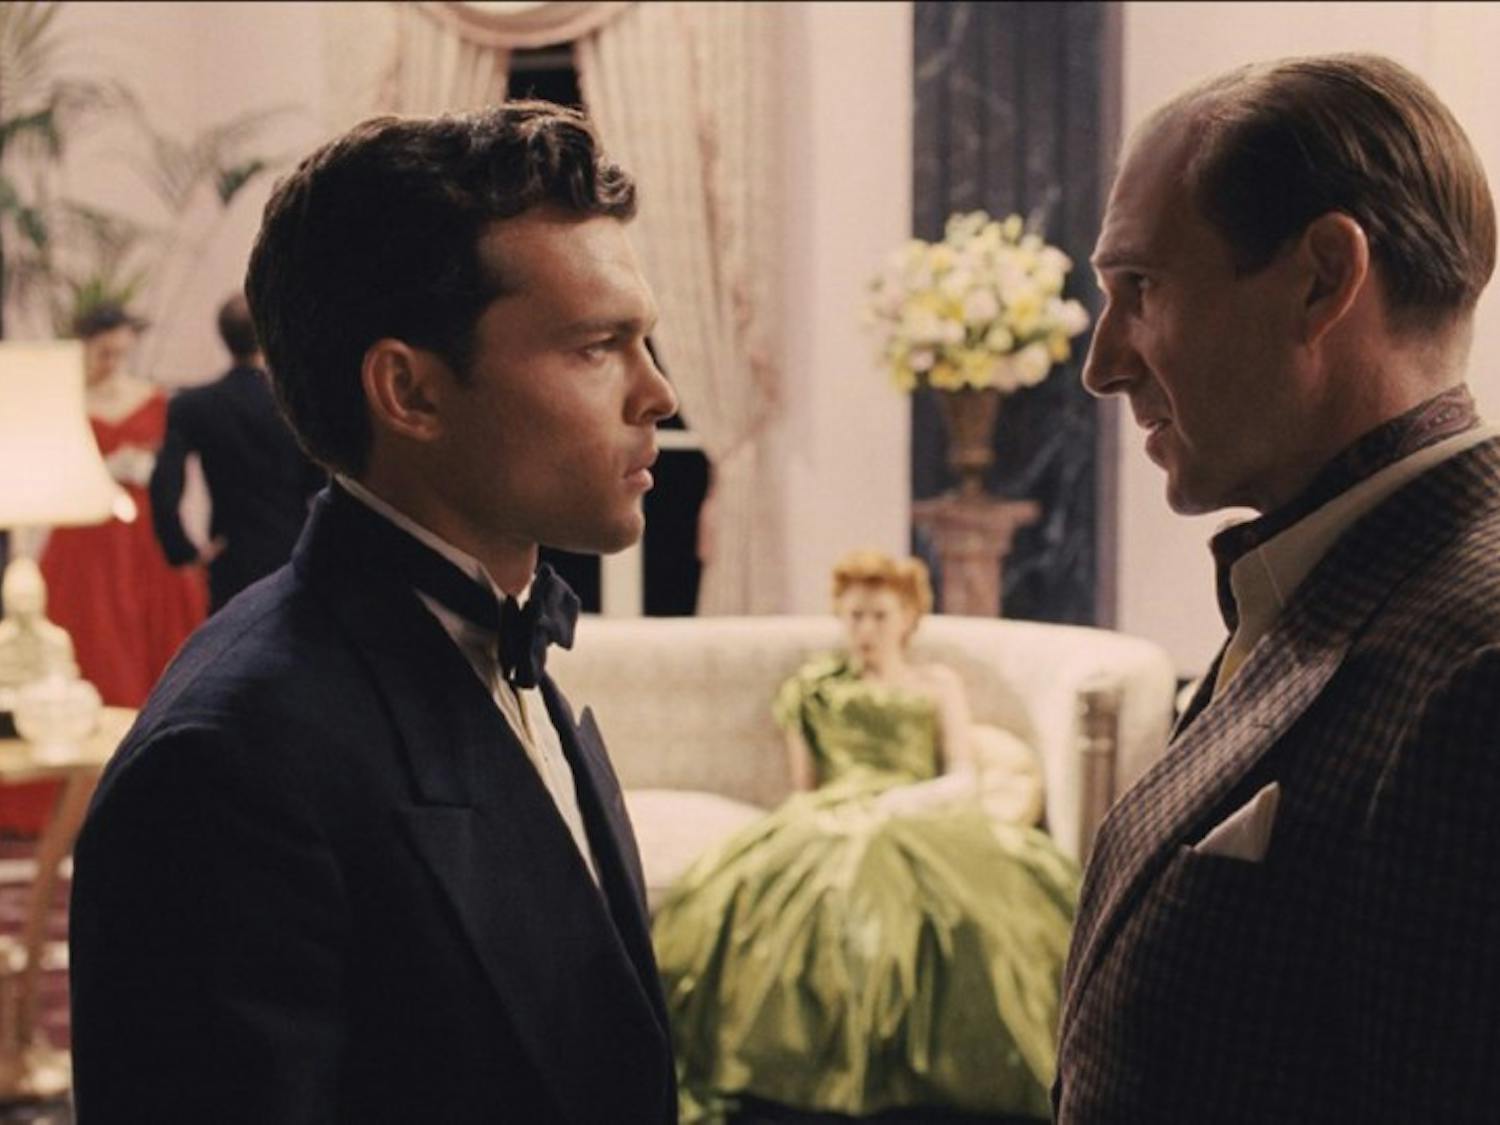 Ralph Fiennes and Alden Ehrenreich in "Hail, Caesar!" (Universal Pictures)